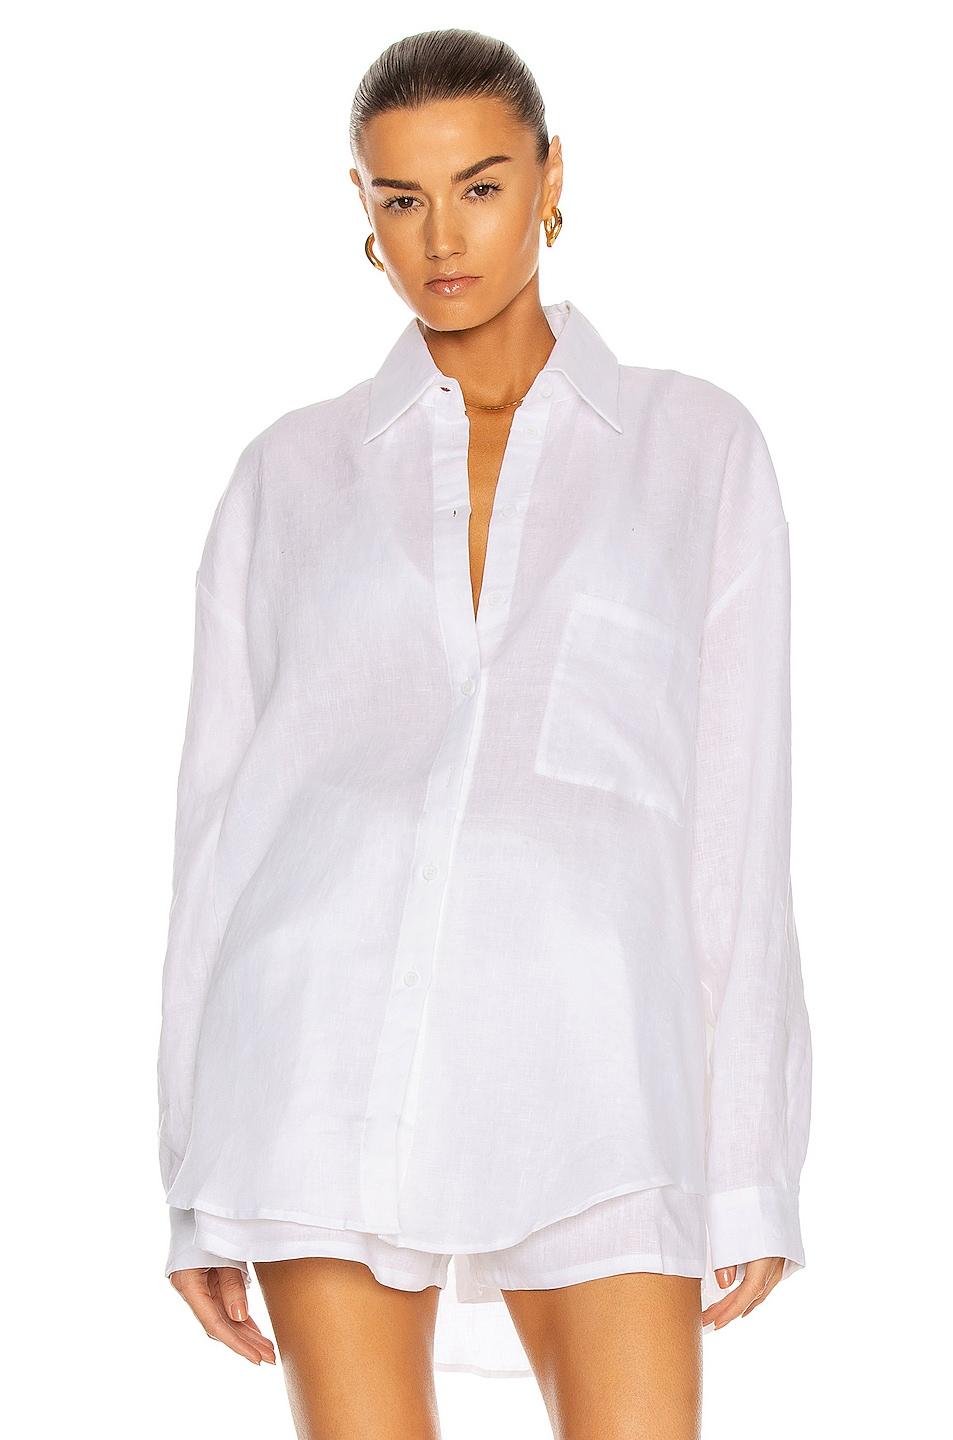 Linen shirt in White, Plain Pattern